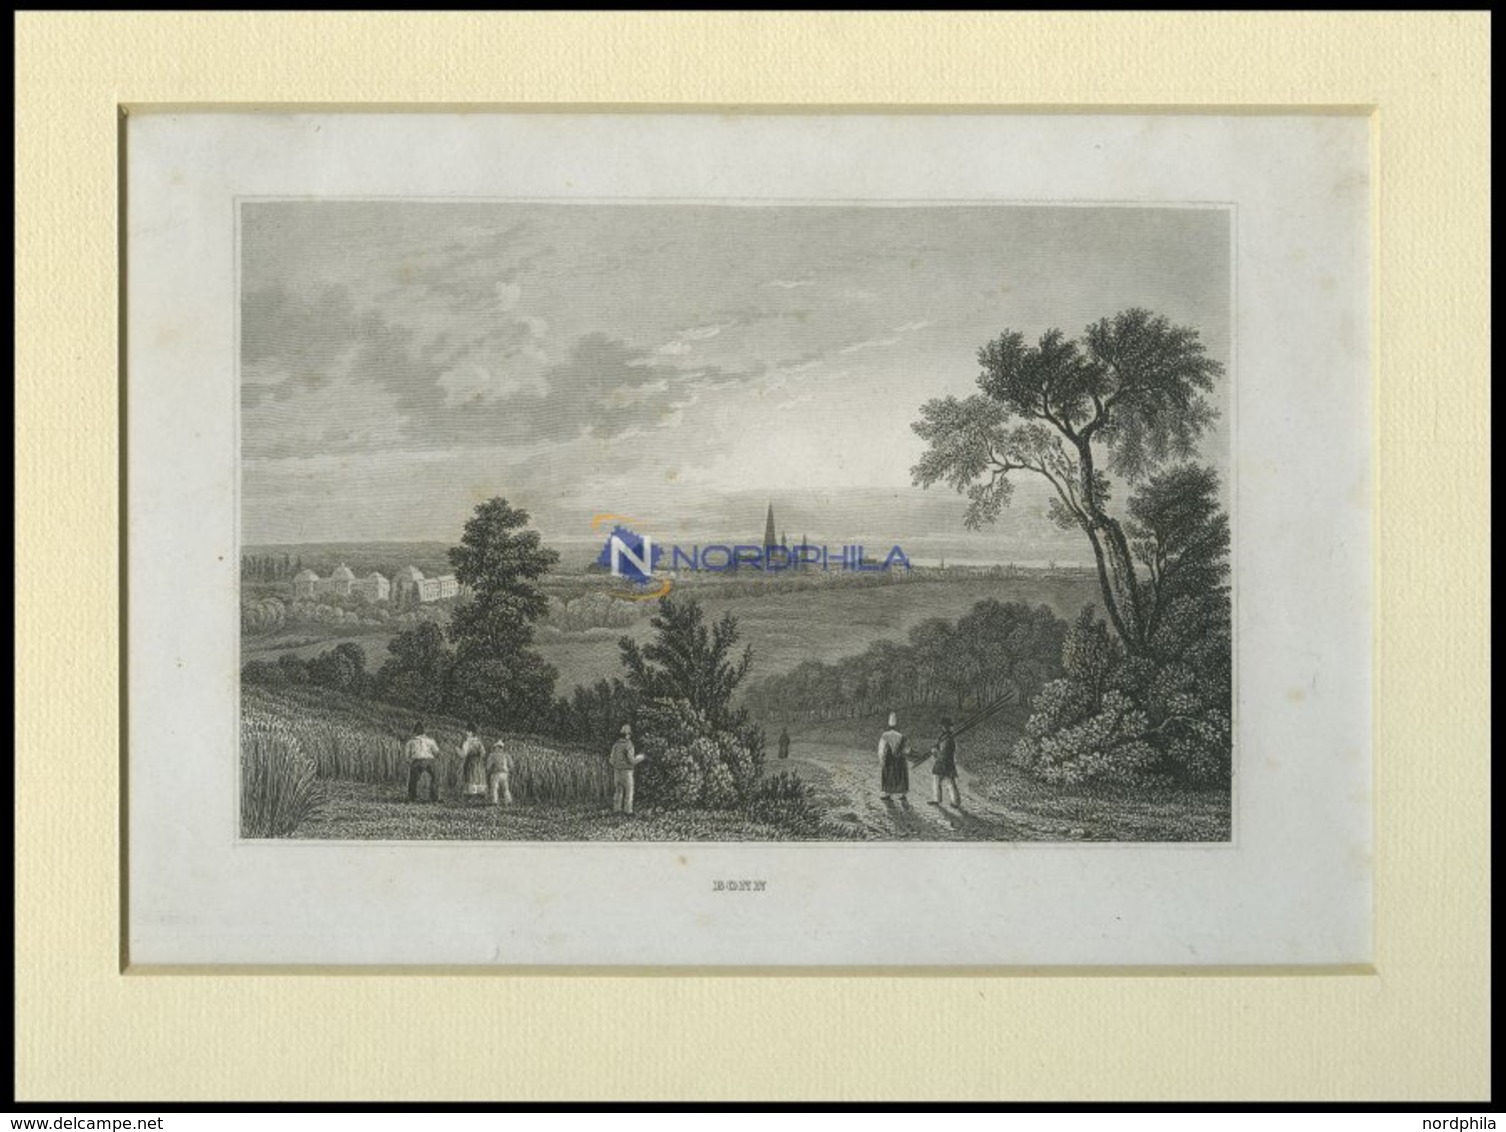 BONN, Ansicht Aus Der Ferne, Stahlstich Von B.I. Um 1840 - Lithographies